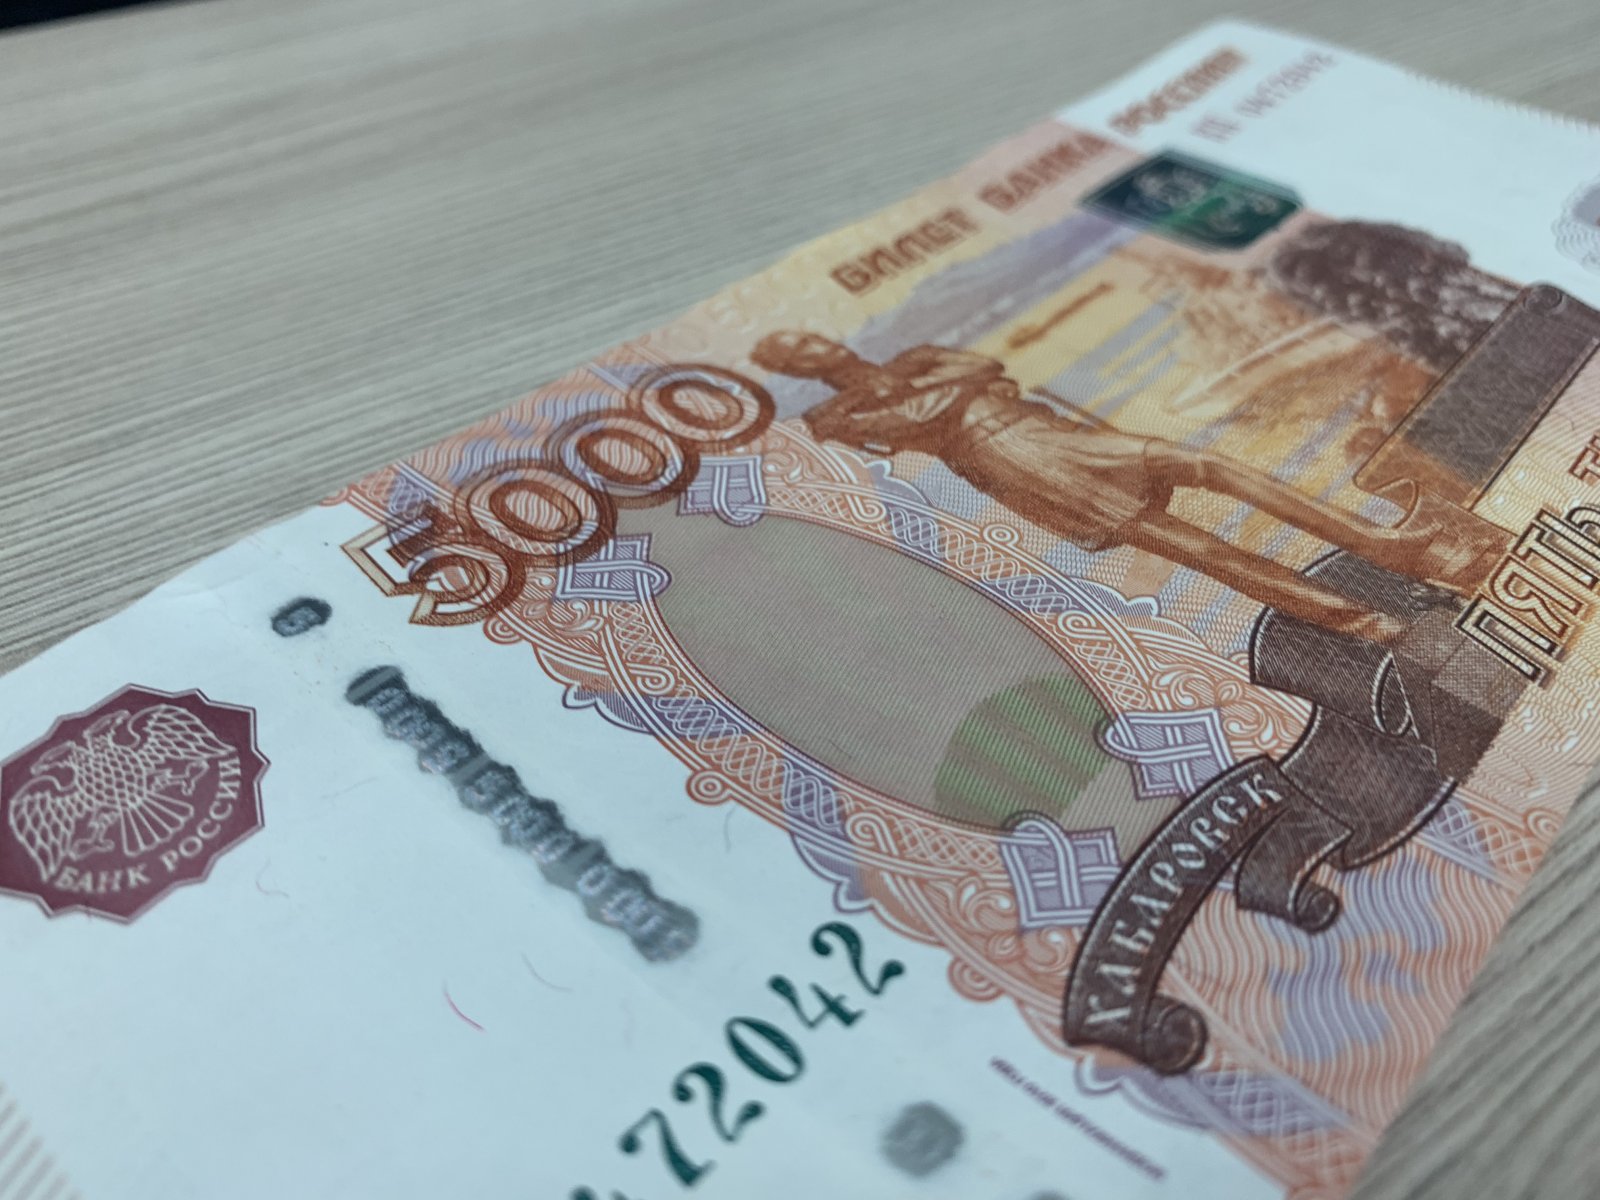 В Москве завели уголовное дело за невыплату зарплаты на 1,6 млн рублей